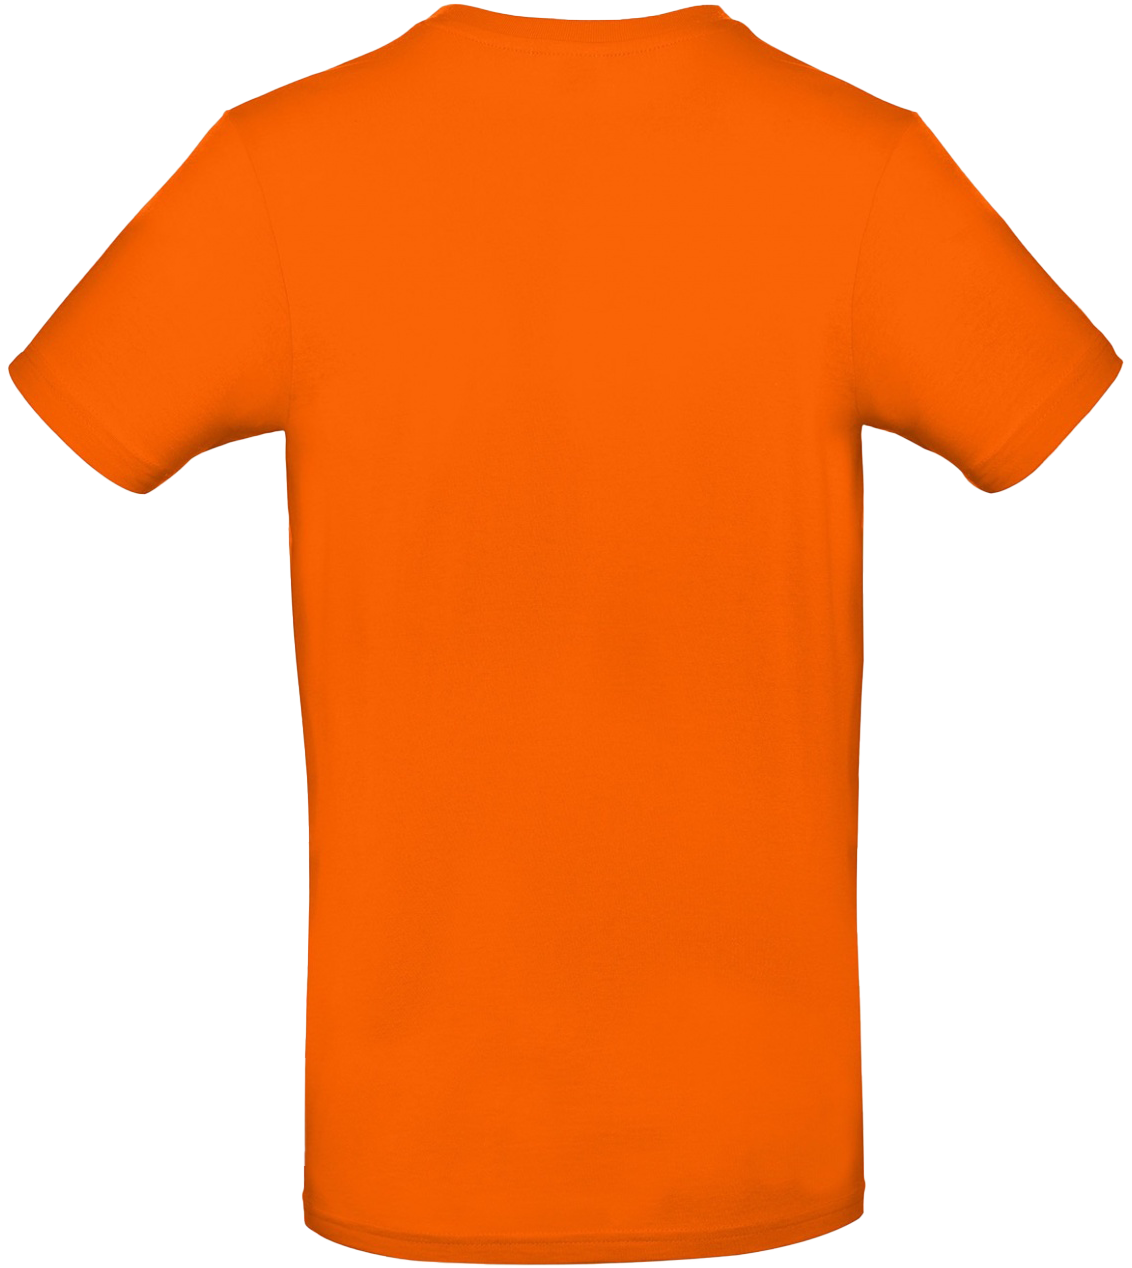 T-shirt E#190 Orange 50